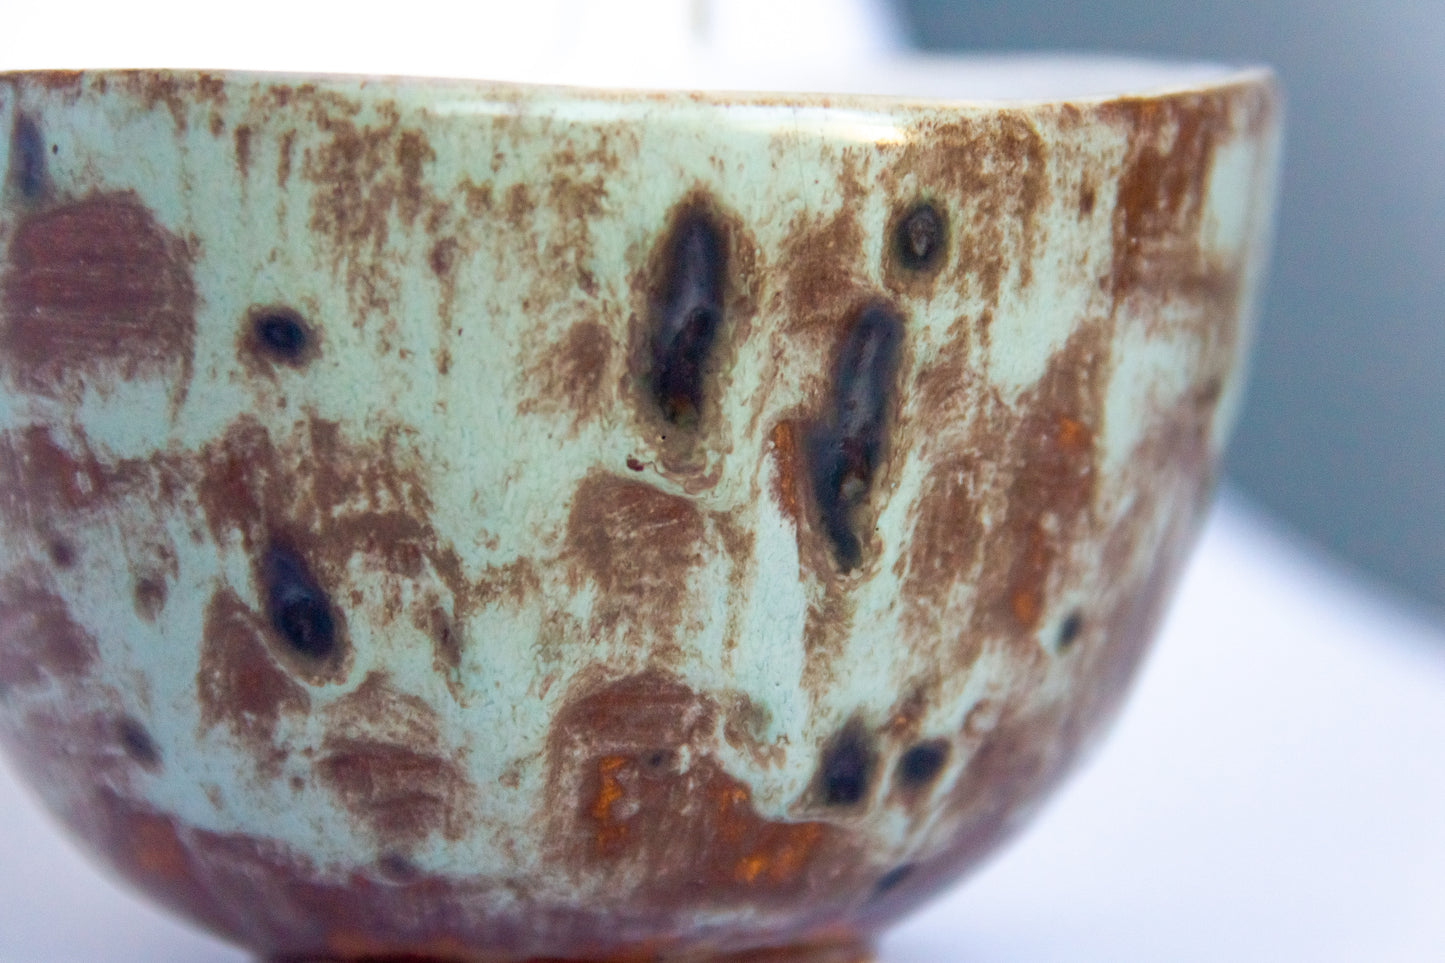 Kubek ceramiczny w kolorze biało-brązowym z plamkami